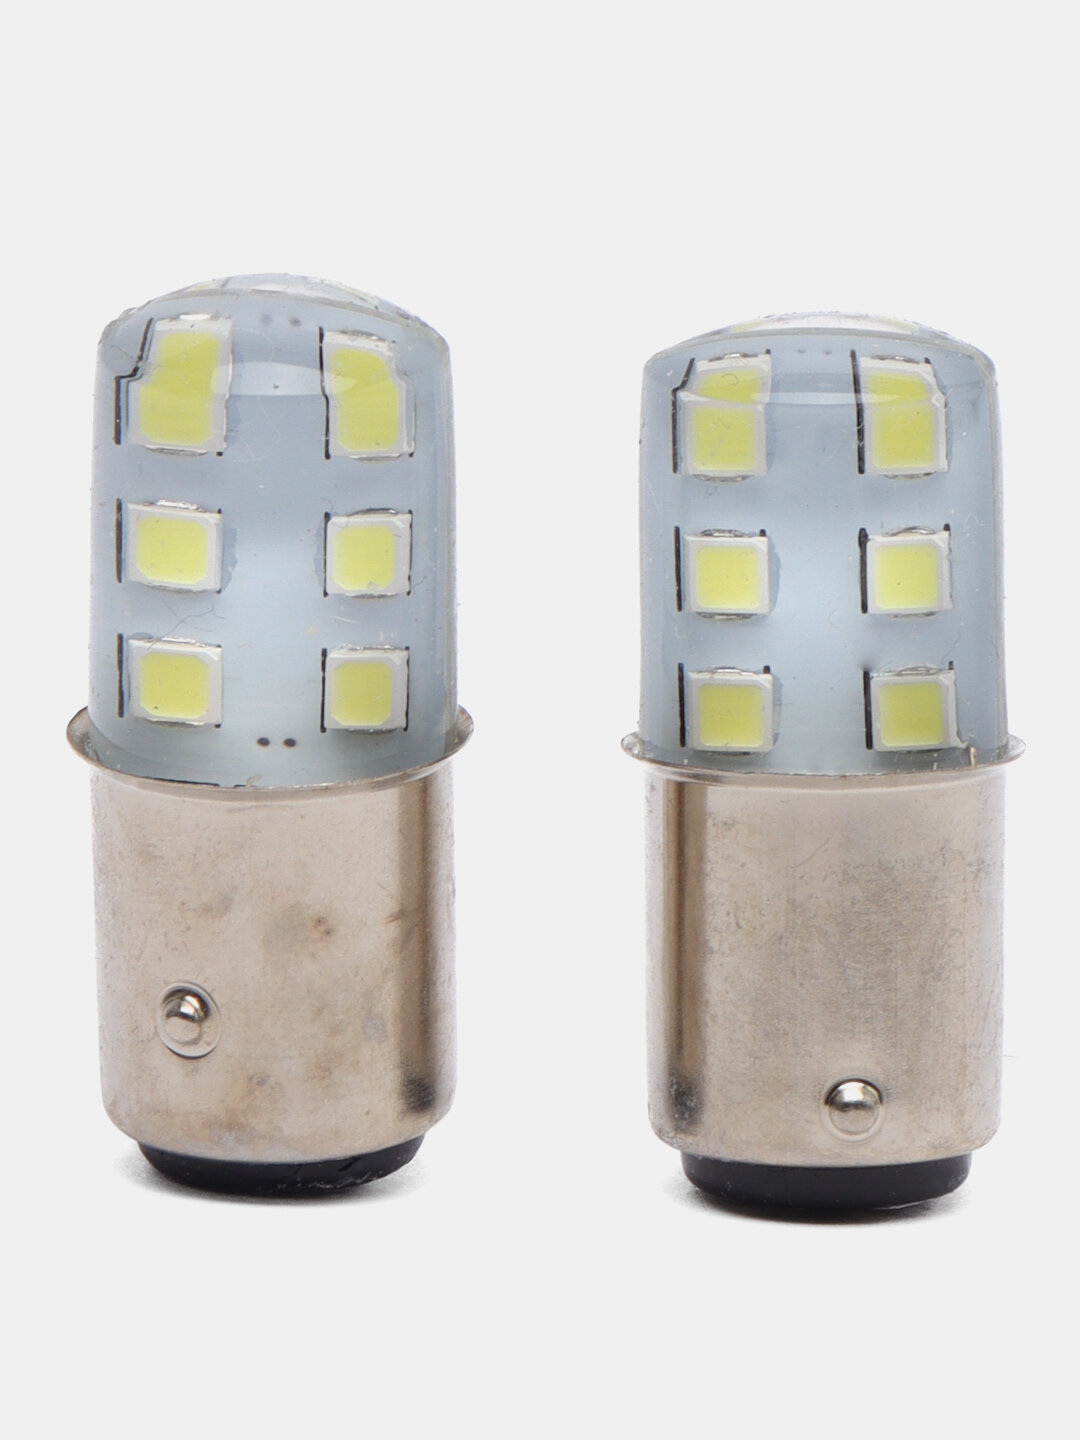 Автомобильная лампа светодиодная, цоколь 1156 или 1157 Количество 2 ШТ, Цоколь 1157 ( двухконтактные ), Цвет Белый